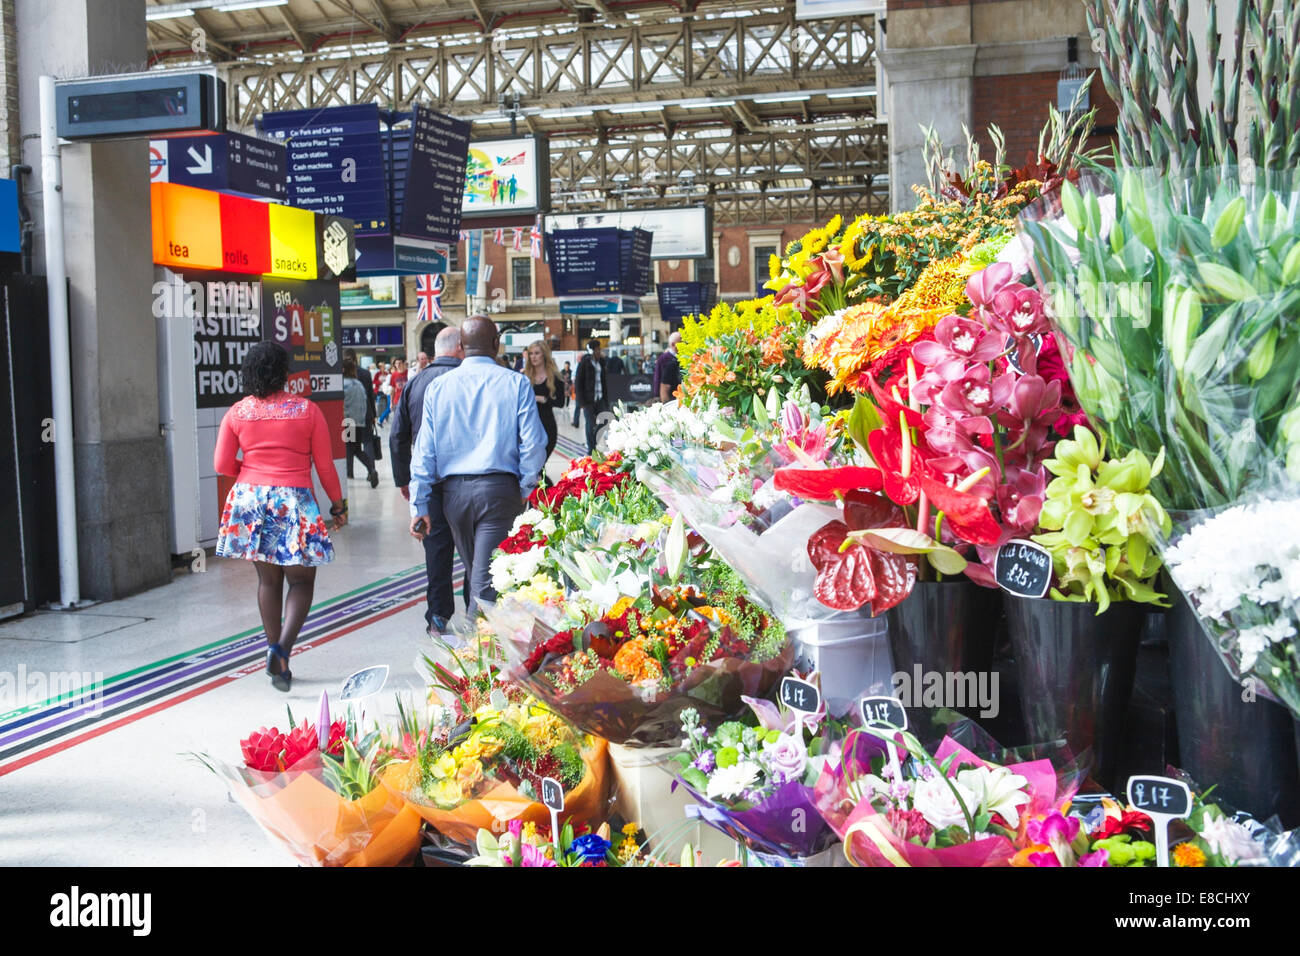 L'île de fleurs fleuriste : fleurs : à la gare de Victoria, London, UK. Banque D'Images